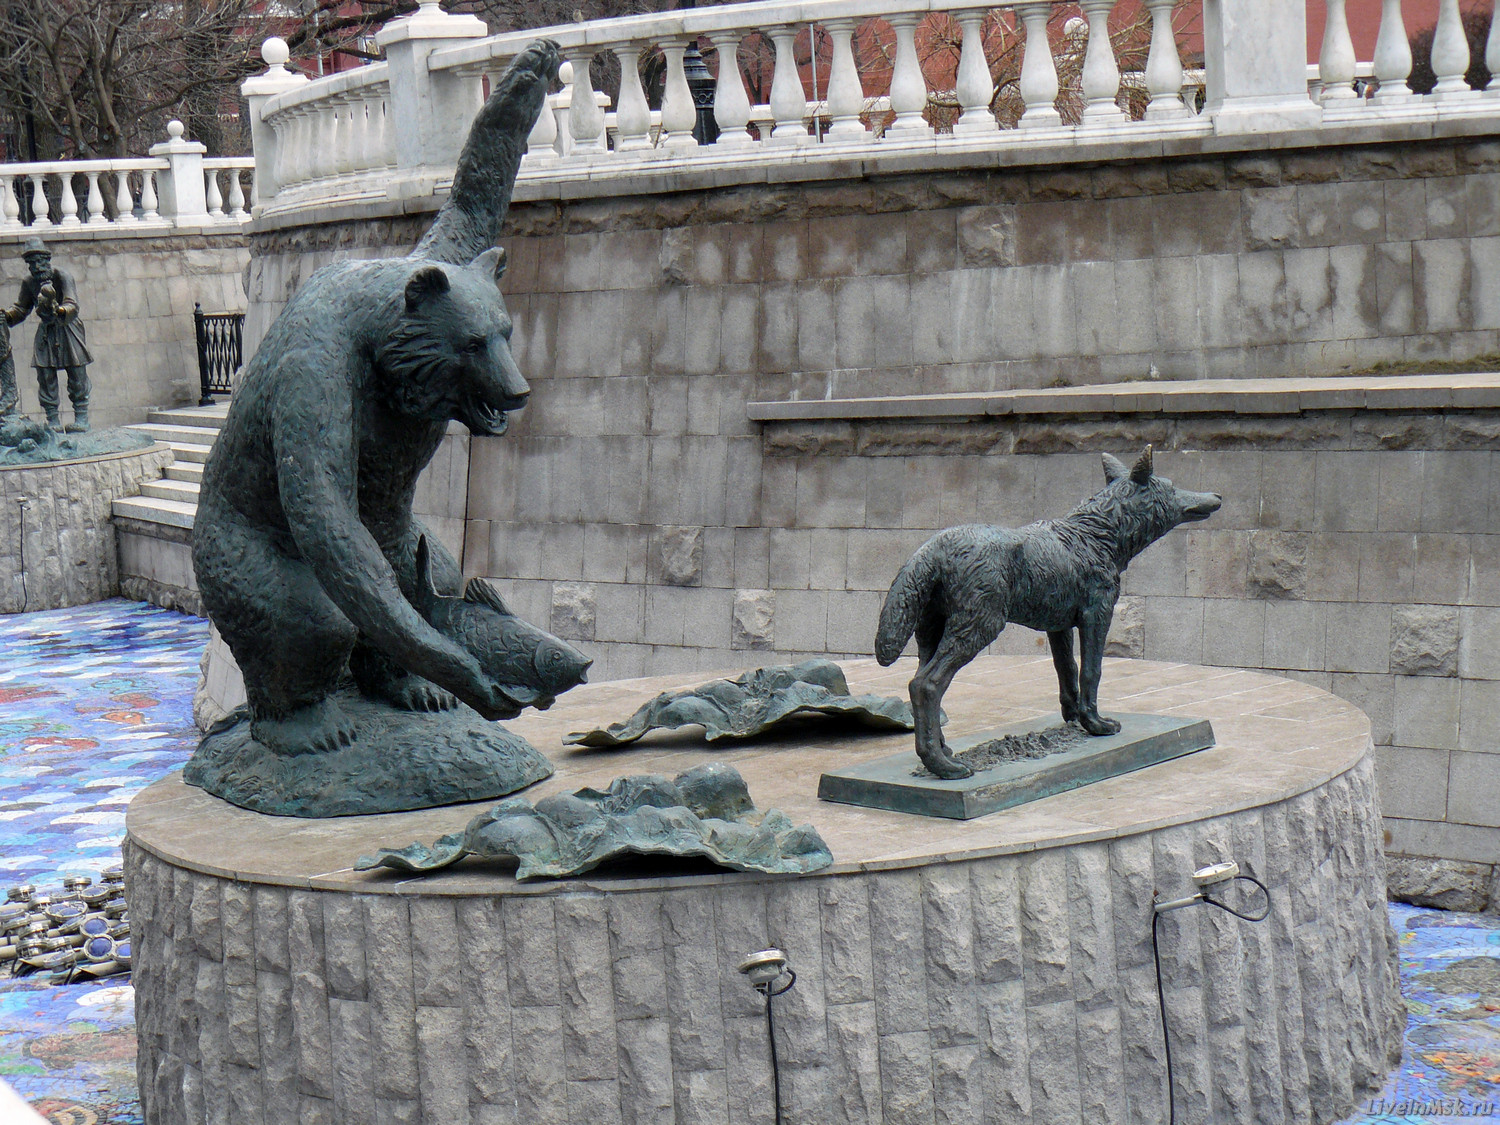 Скульптура в декоративном русле реки Неглинки